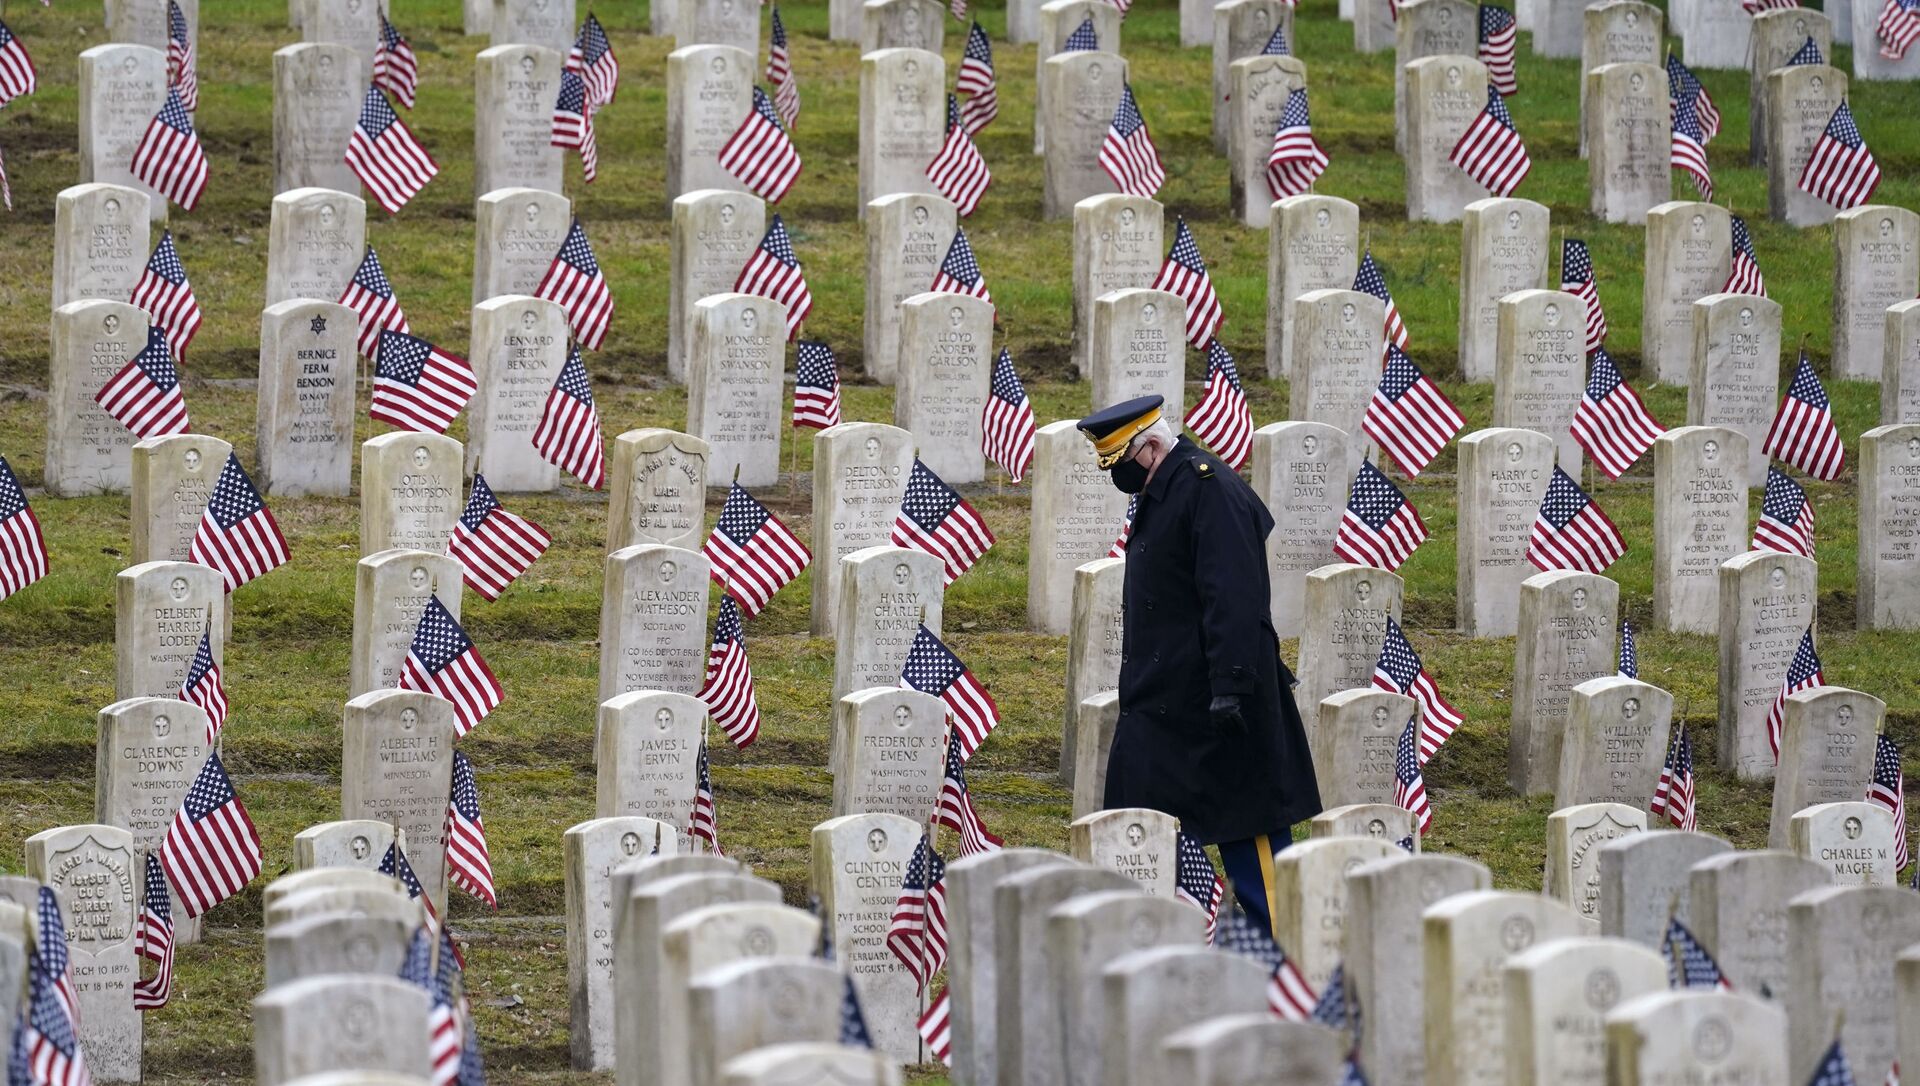 Ветеран армии США в отставке Билл МакКалли идет среди покрытых флагами могил на кладбище ветеранов, архивное фото - Sputnik Таджикистан, 1920, 11.03.2021